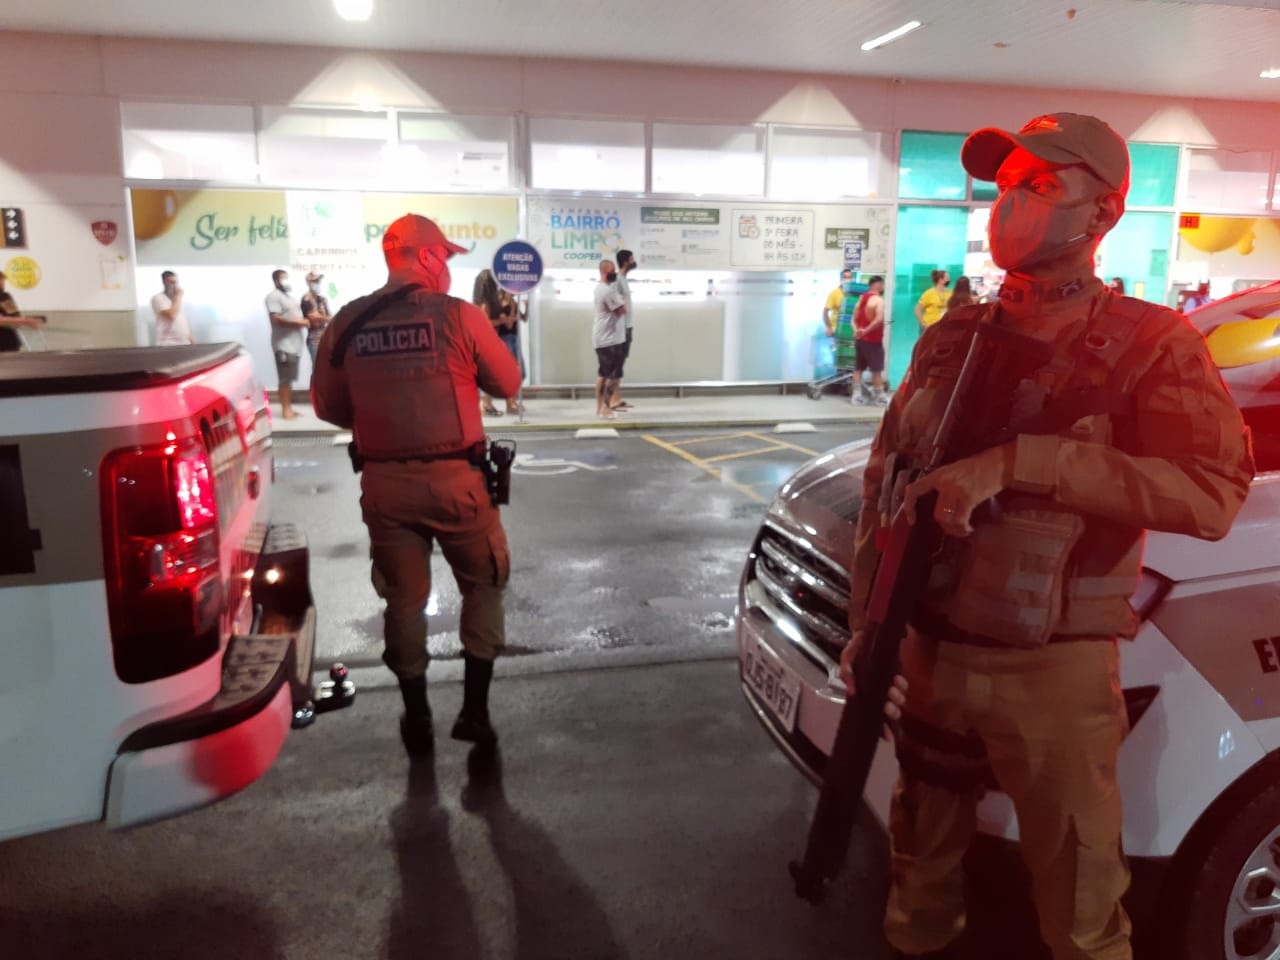 Policiais militares vêm fiscalizando as normas sanitárias desde o início da pandemia | Foto: Cláudio Costa/OCP News